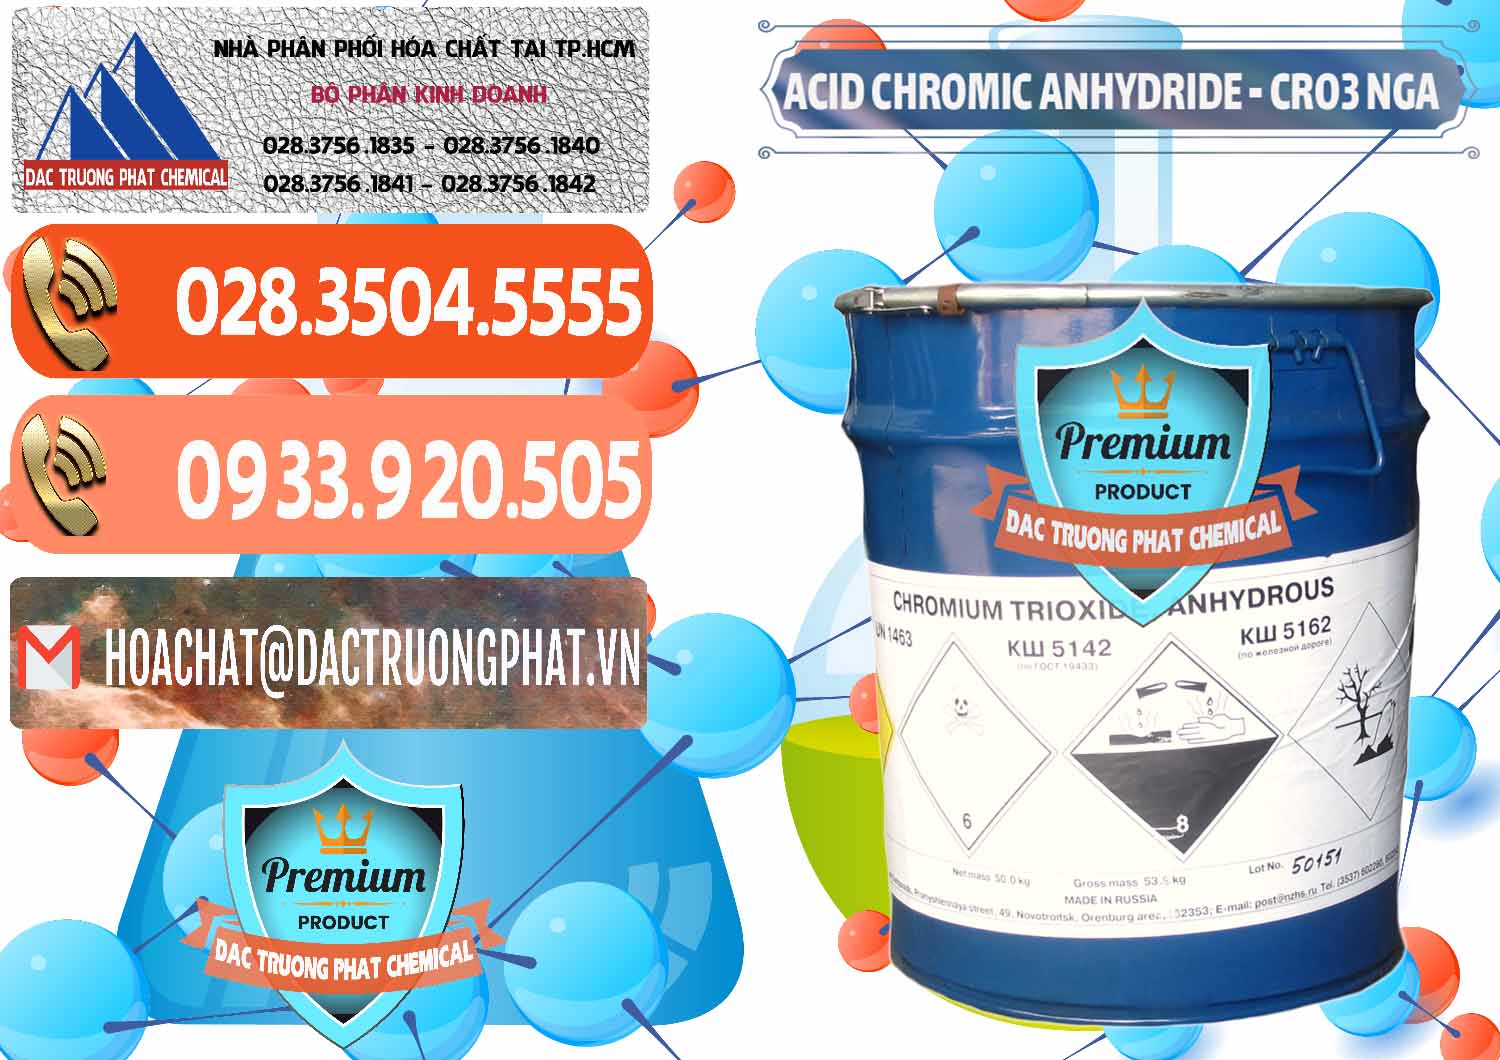 Nơi chuyên nhập khẩu - bán Acid Chromic Anhydride - Cromic CRO3 Nga Russia - 0006 - Cty phân phối ( cung cấp ) hóa chất tại TP.HCM - hoachatmientay.com